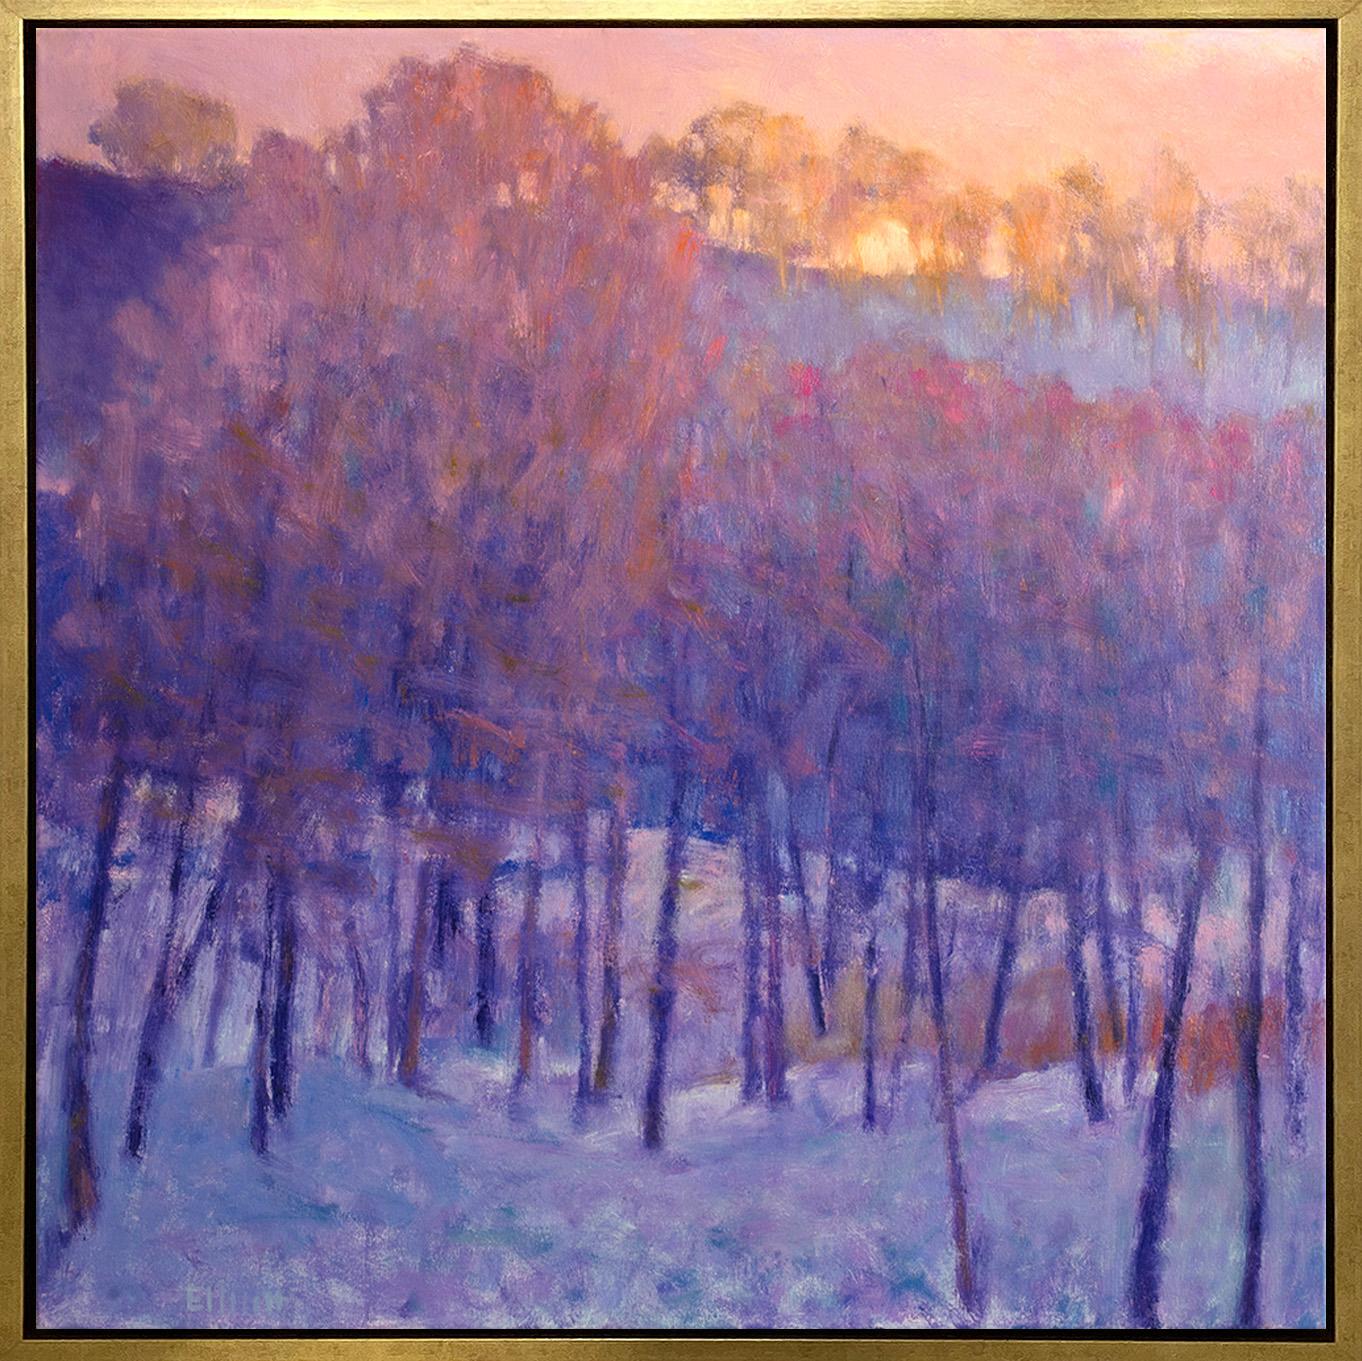 Cette peinture impressionniste abstraite de Ken Elliotts représente une forêt d'arbres sous un manteau de neige et un coucher de soleil subtil au-dessus de la forêt. Les troncs fins des arbres sont d'un violet profond, contrastant avec l'orange